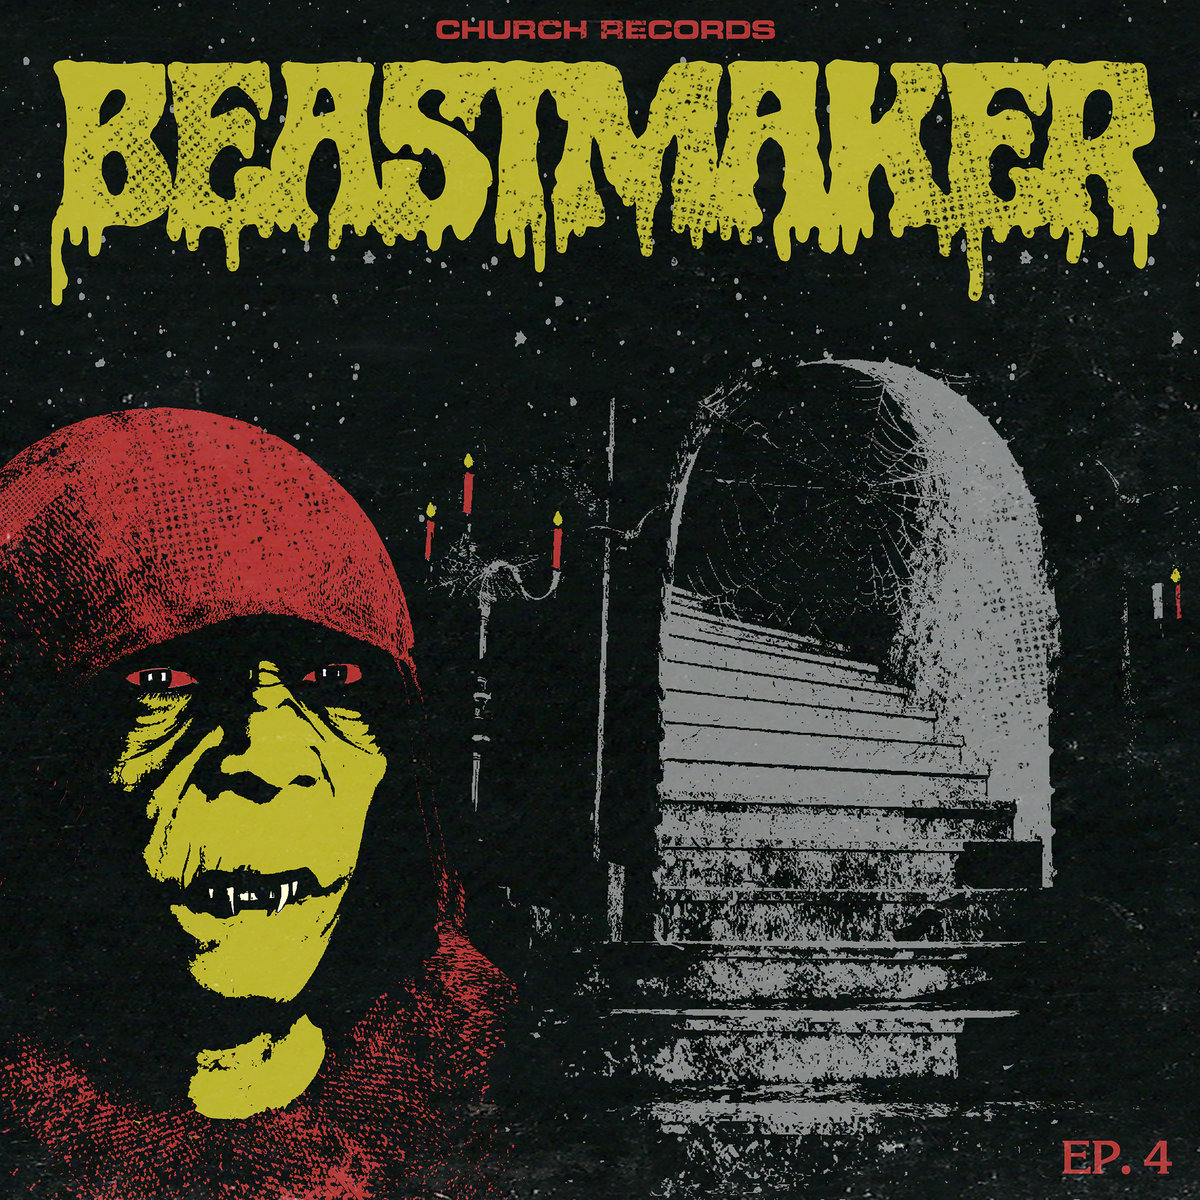 Beastmaker EP-4 Eye To Eye Skyclad Rippers Blade Reborn Again